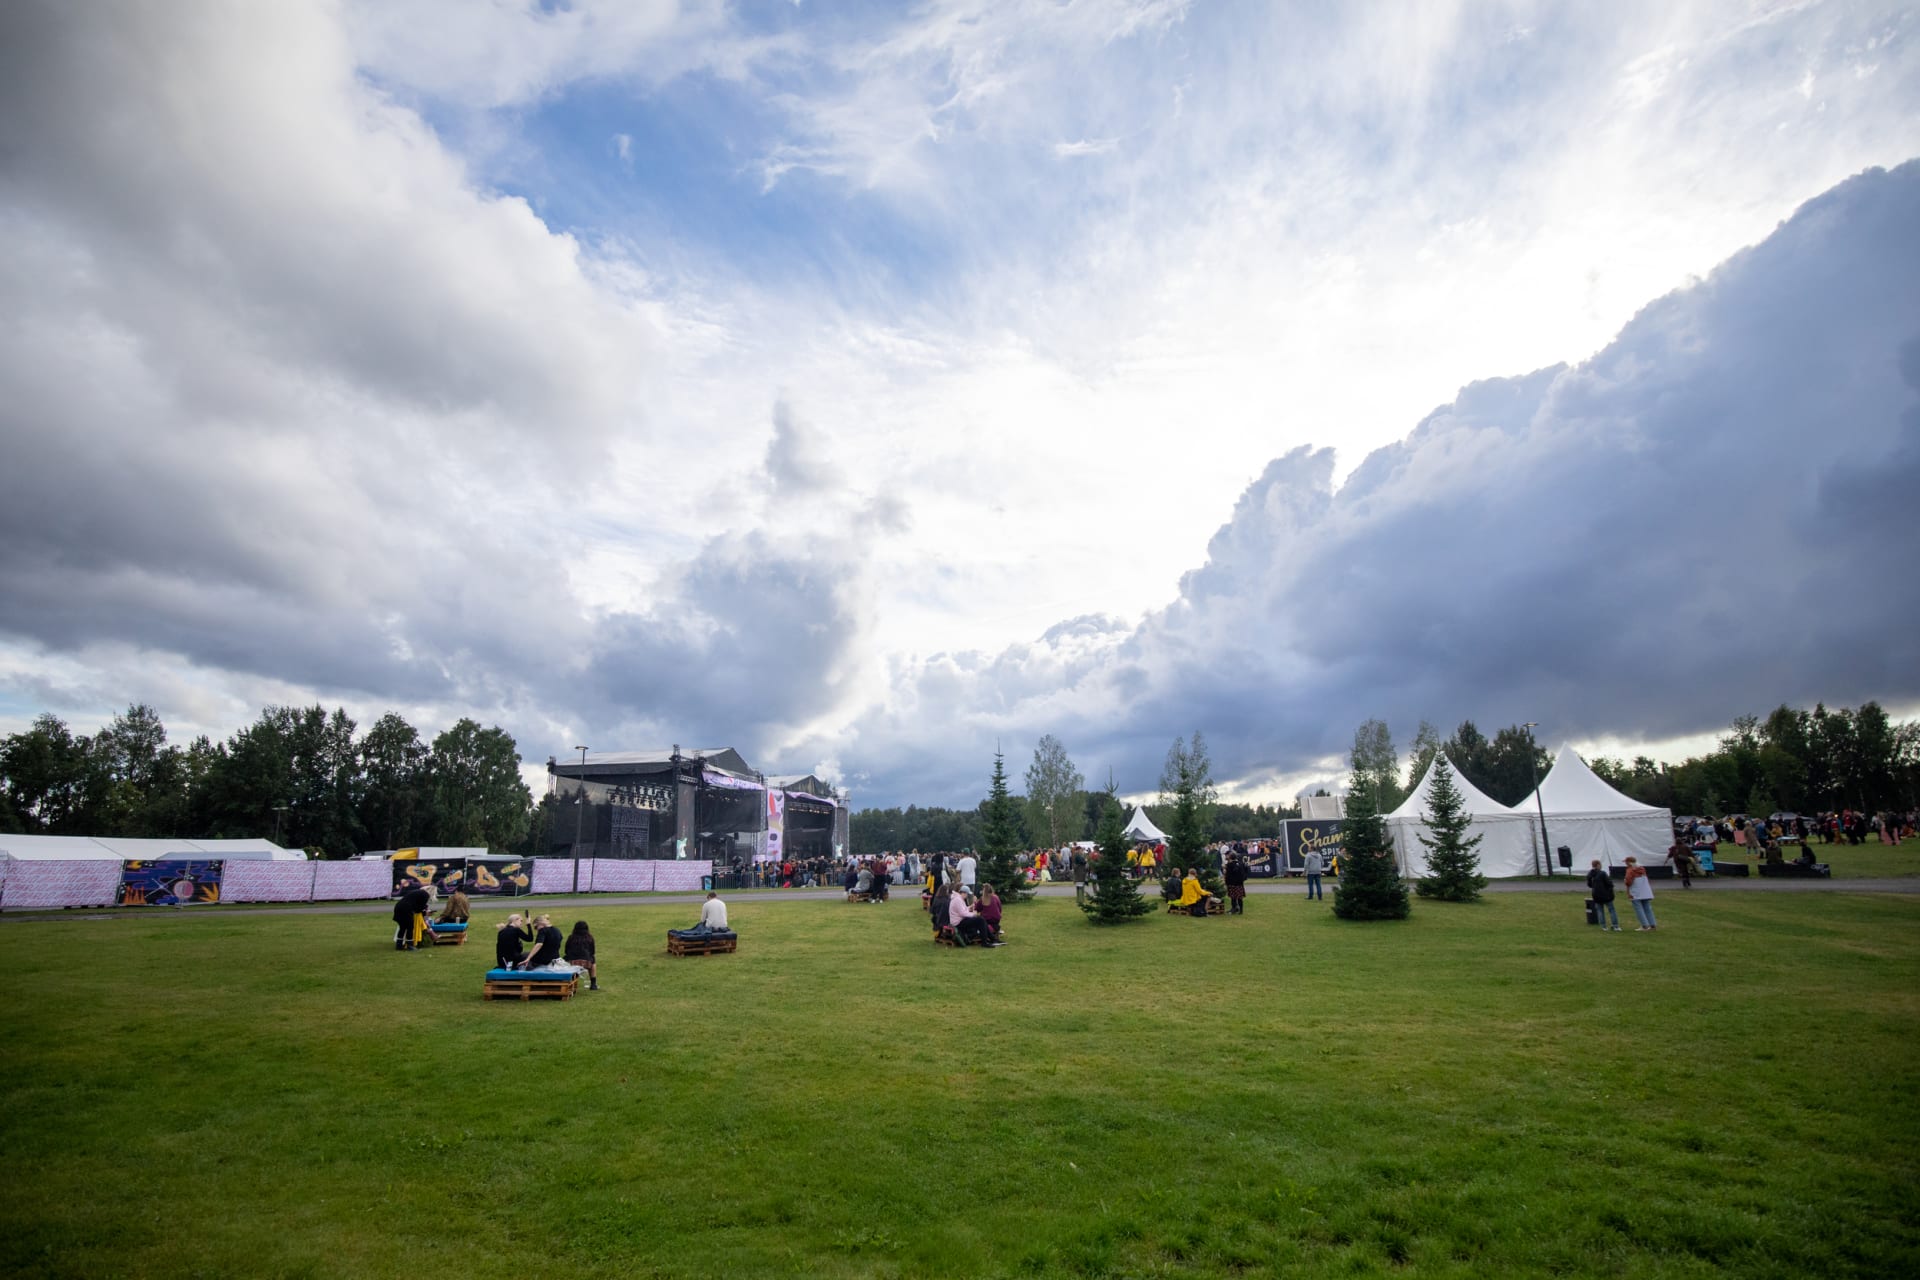 Varjo Festival 2022 was held in Kuusisaari.